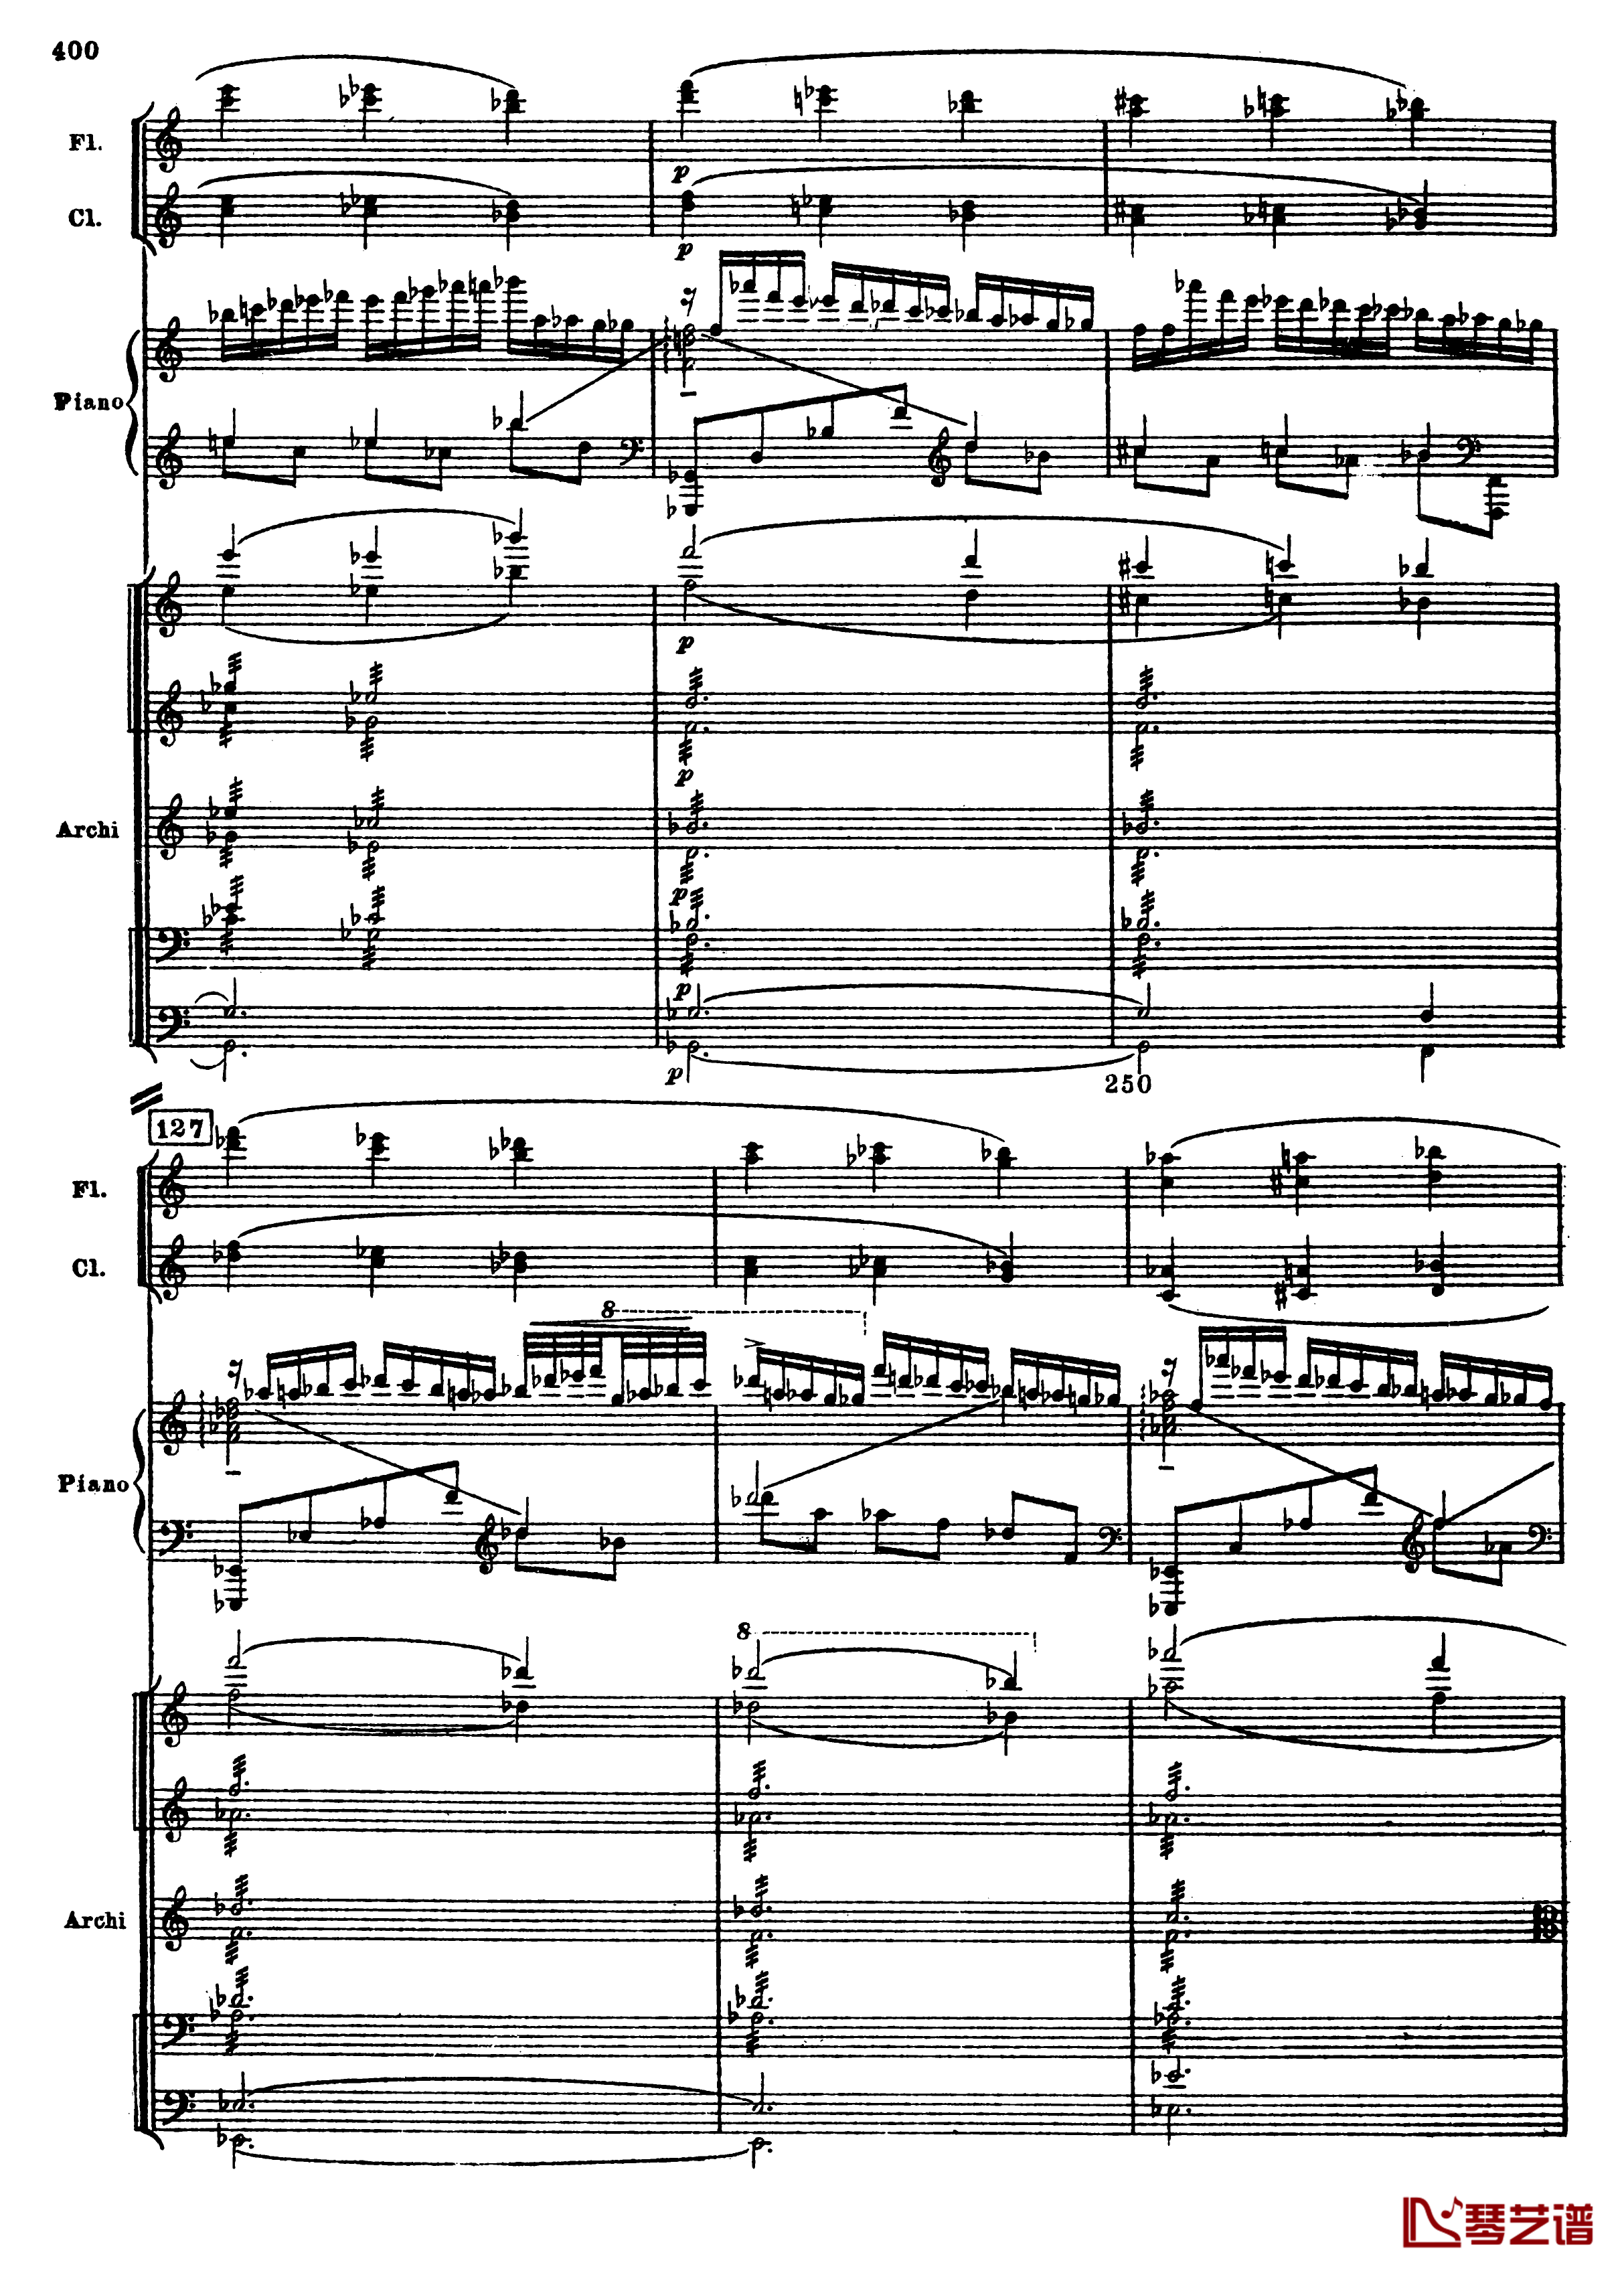 普罗科菲耶夫第三钢琴协奏曲钢琴谱-总谱-普罗科非耶夫132